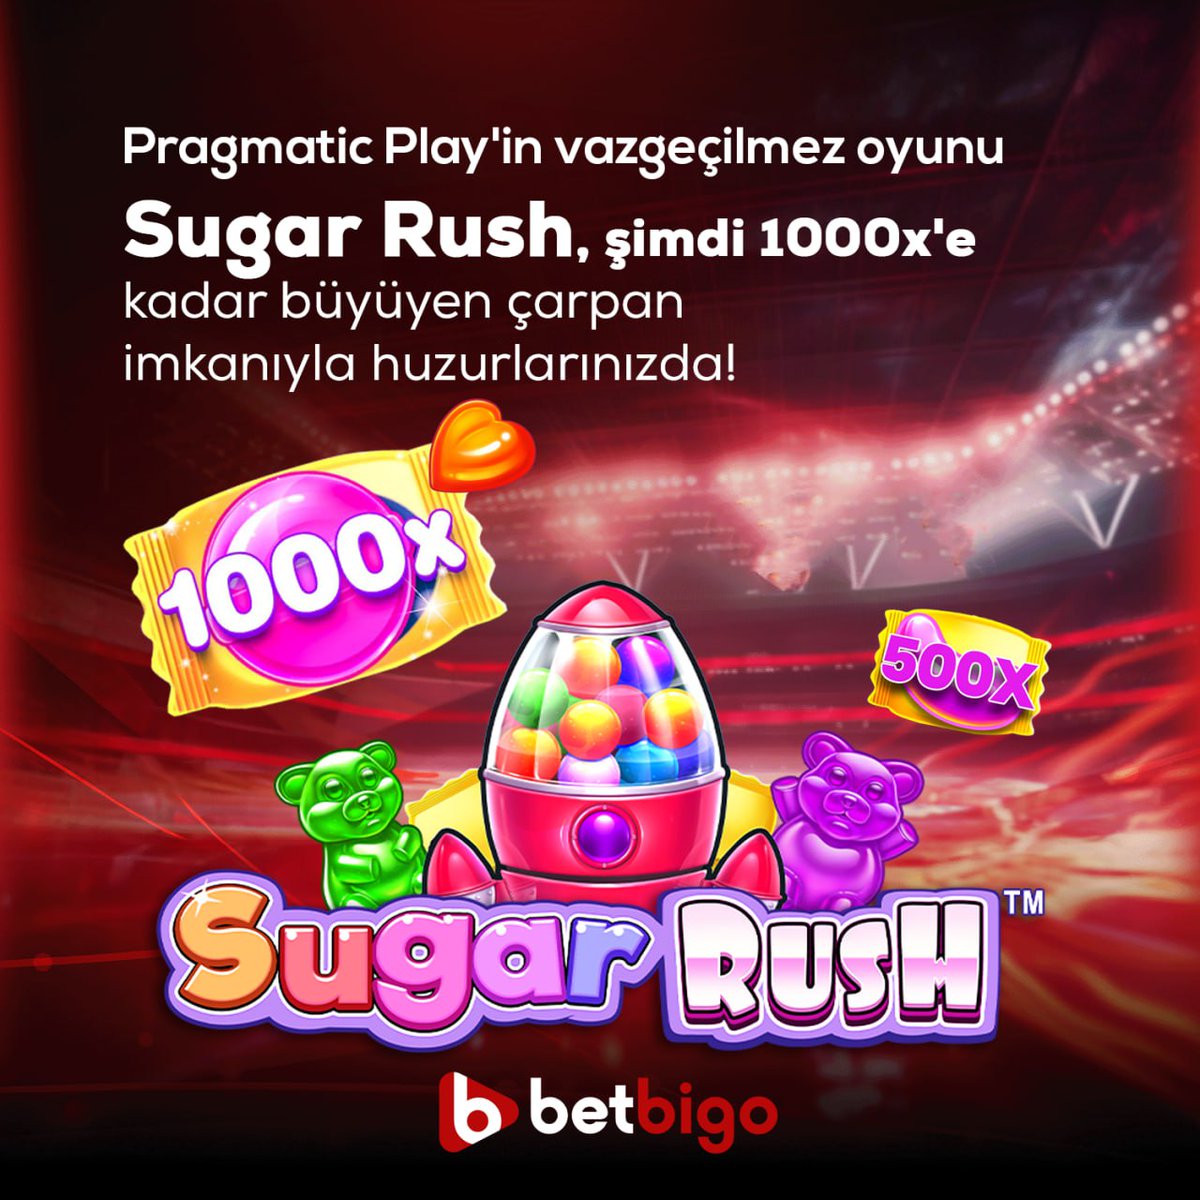 🍭💰 Tatlı bir zafer için hazır mısınız? Pragmatic Play'in eğlenceli oyunu Sugar Rush 1000x ile büyük kazançların tadını çıkarın! 🎉🎰 Şekerle dolu bir maceraya atılın ve 1000 katına kadar kazanç fırsatını kaçırmayın! Kazandıran ve eğlendiren oyunlar Betbigo'da sizi bekliyor!